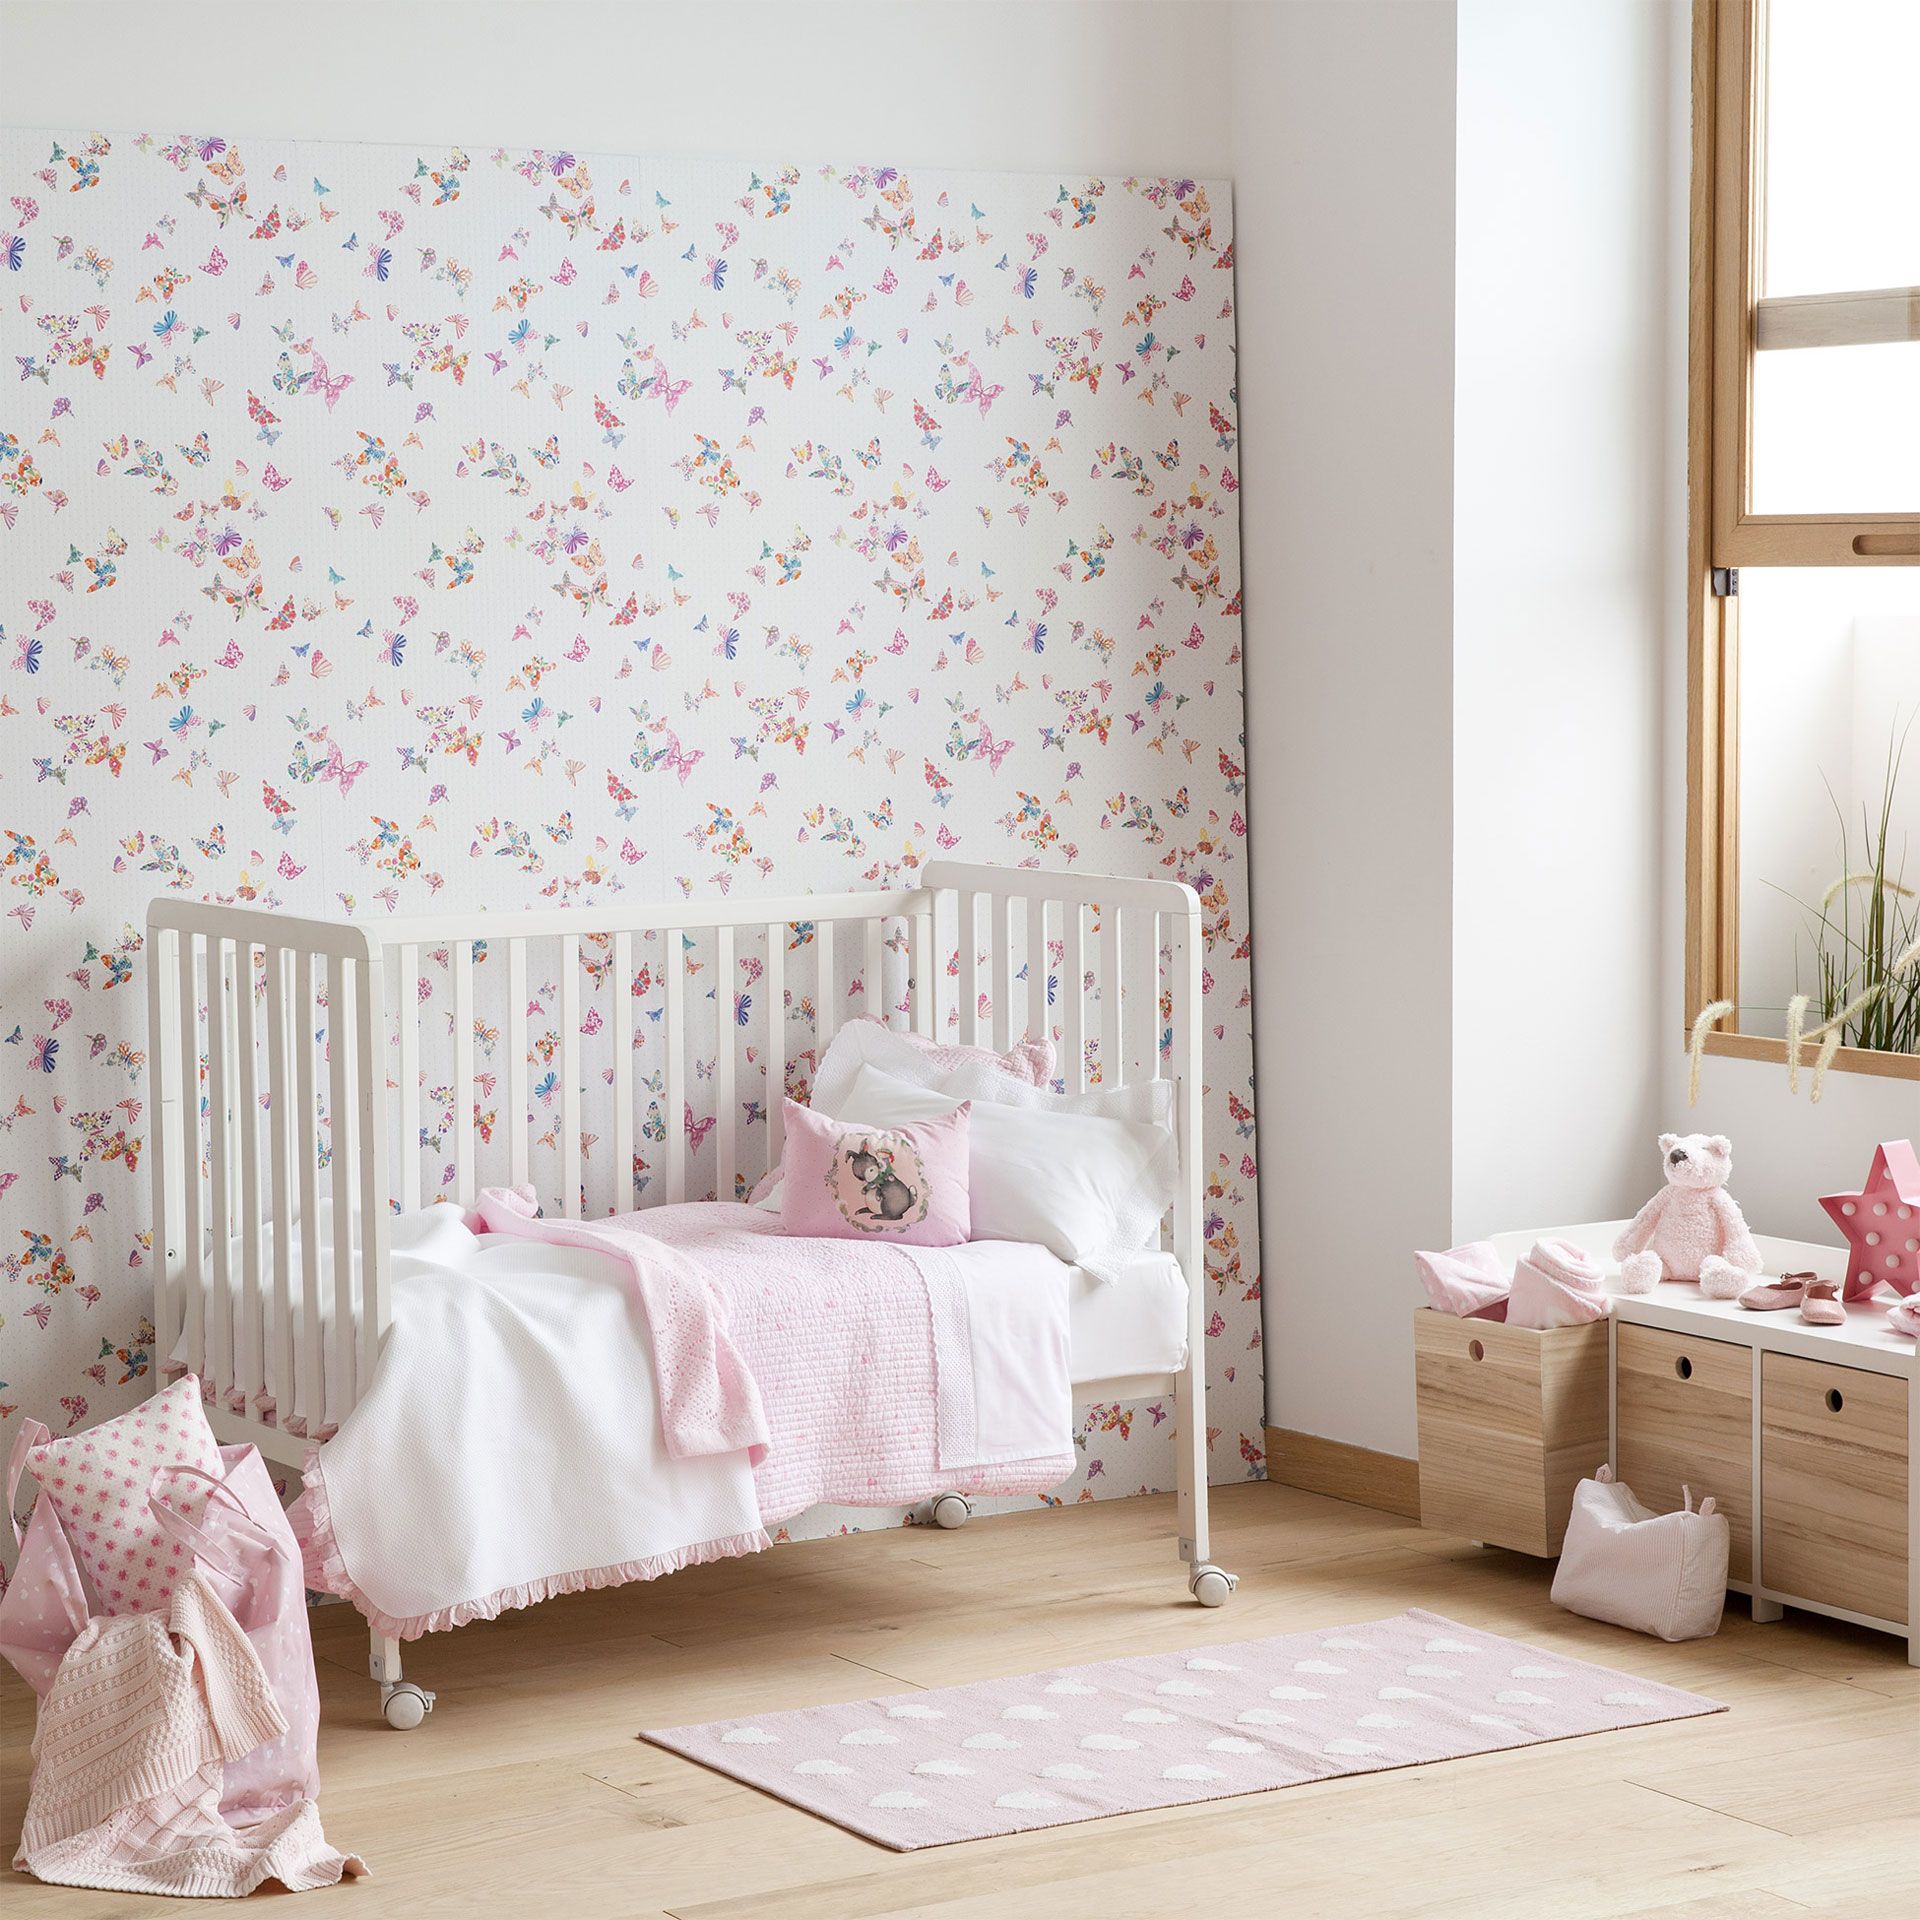 zara home wallpaper,mobilia,prodotto,rosa,camera,parete